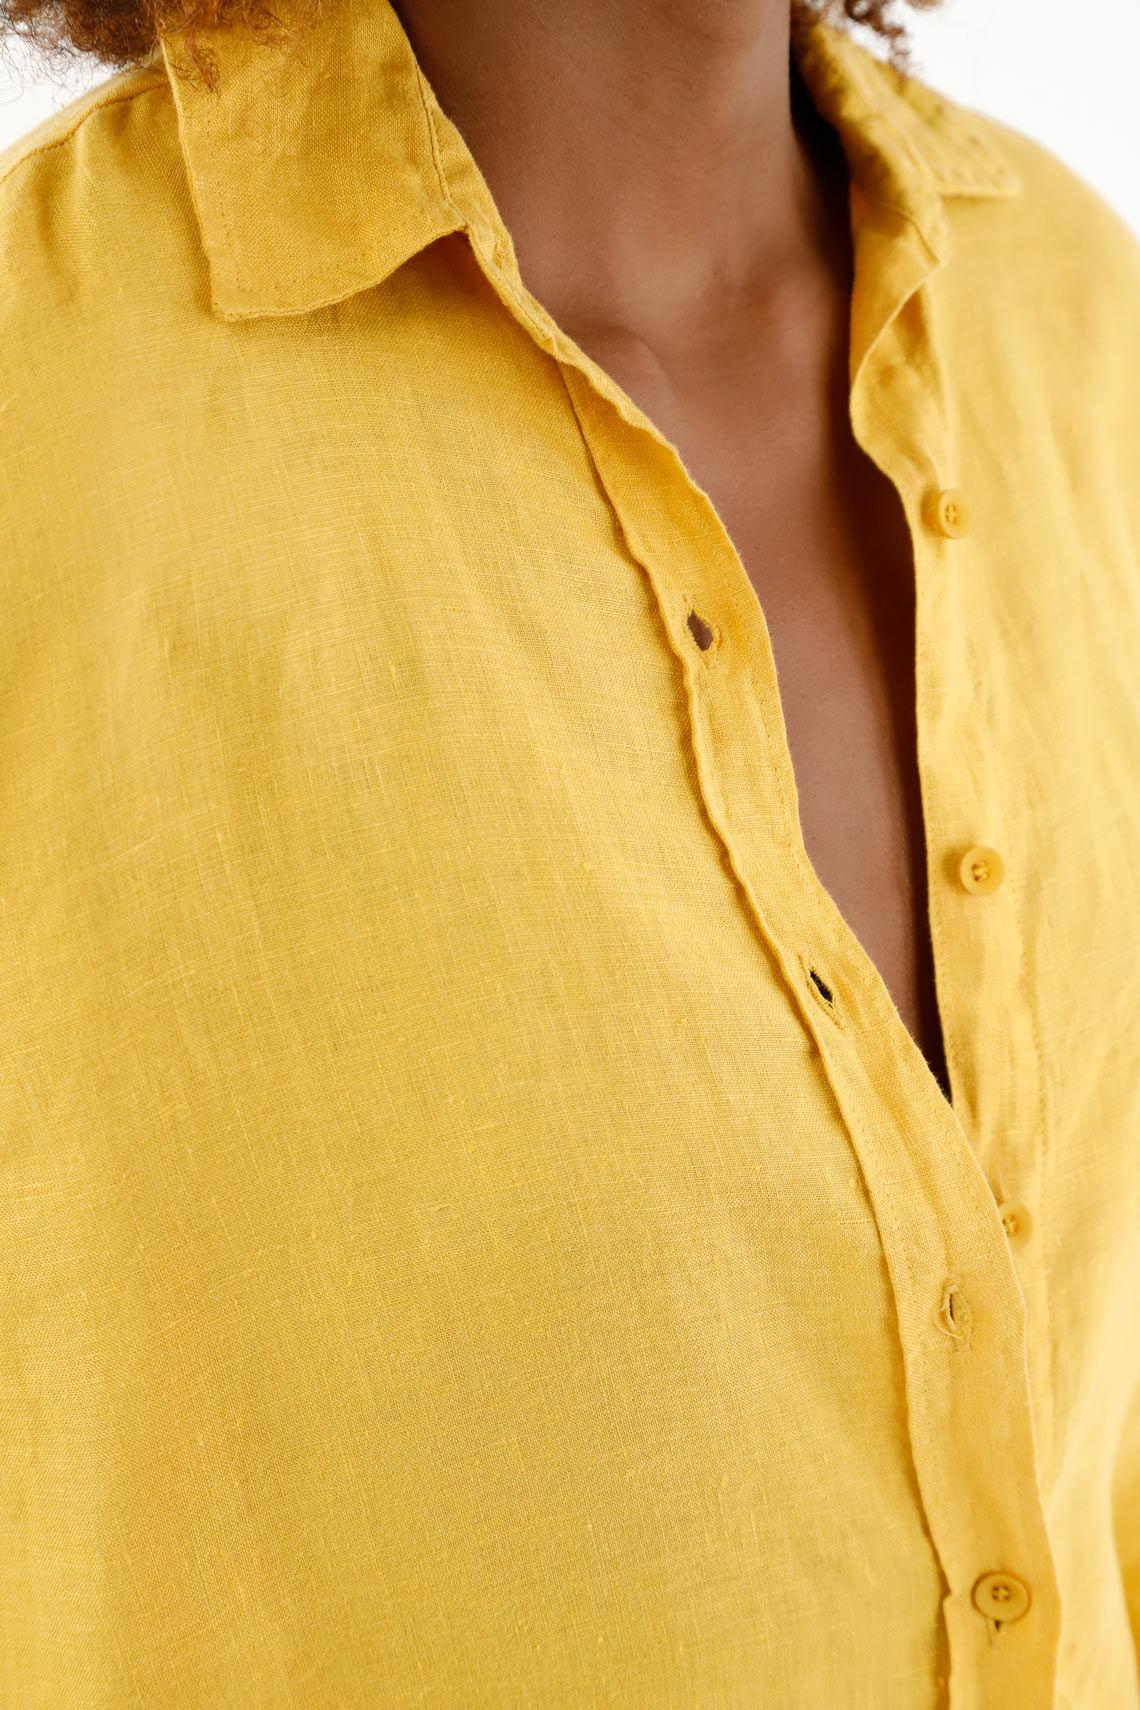 Camisa Mujer Amarilla